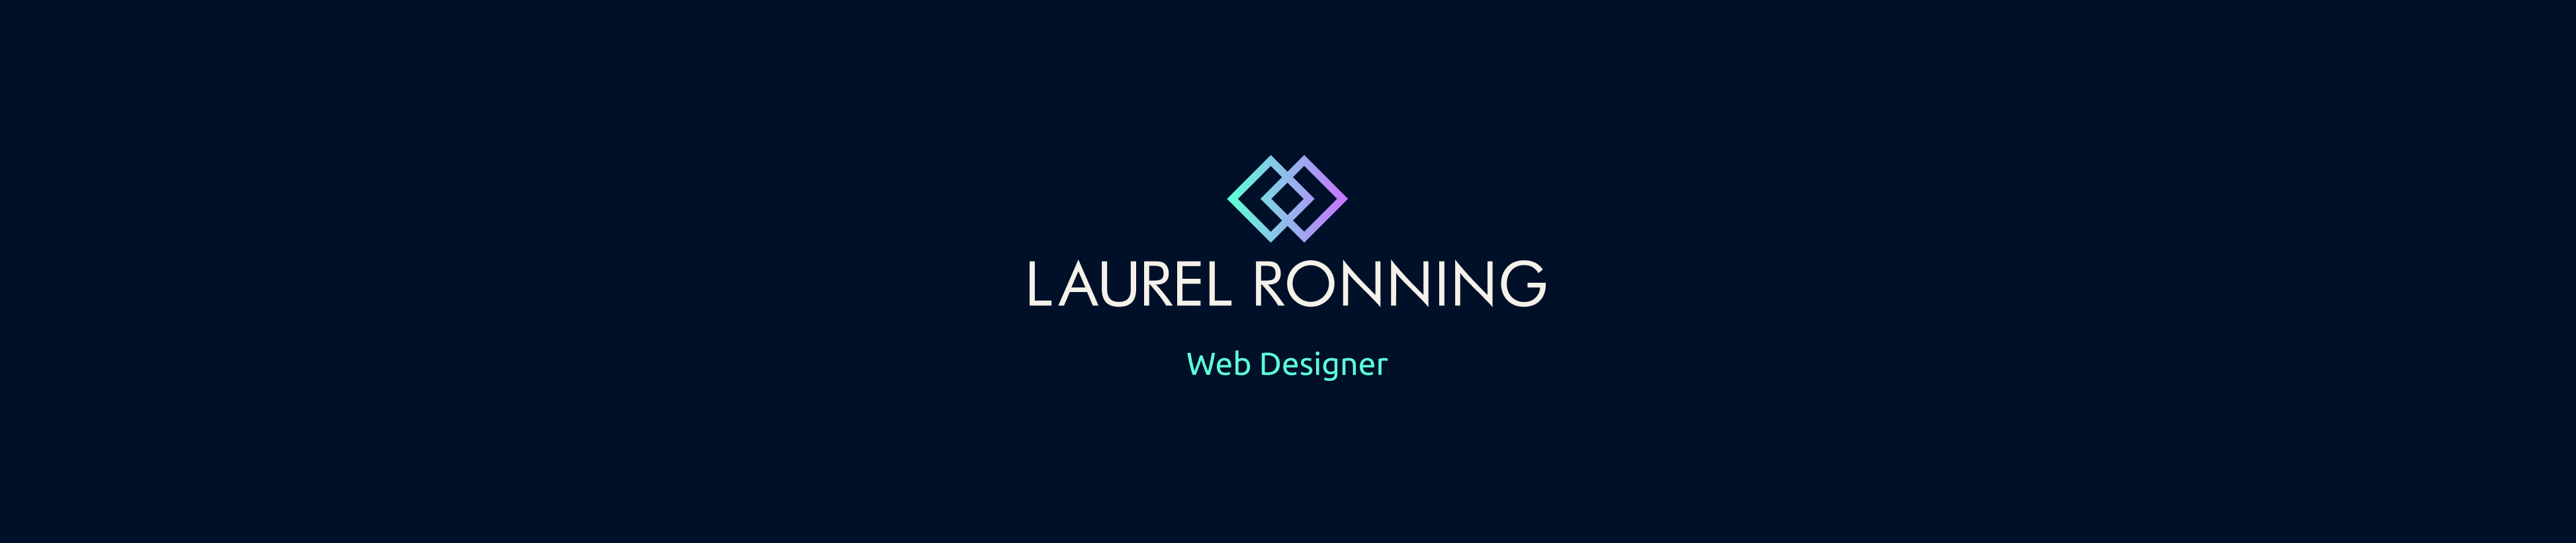 Laurel Ronning profil başlığı